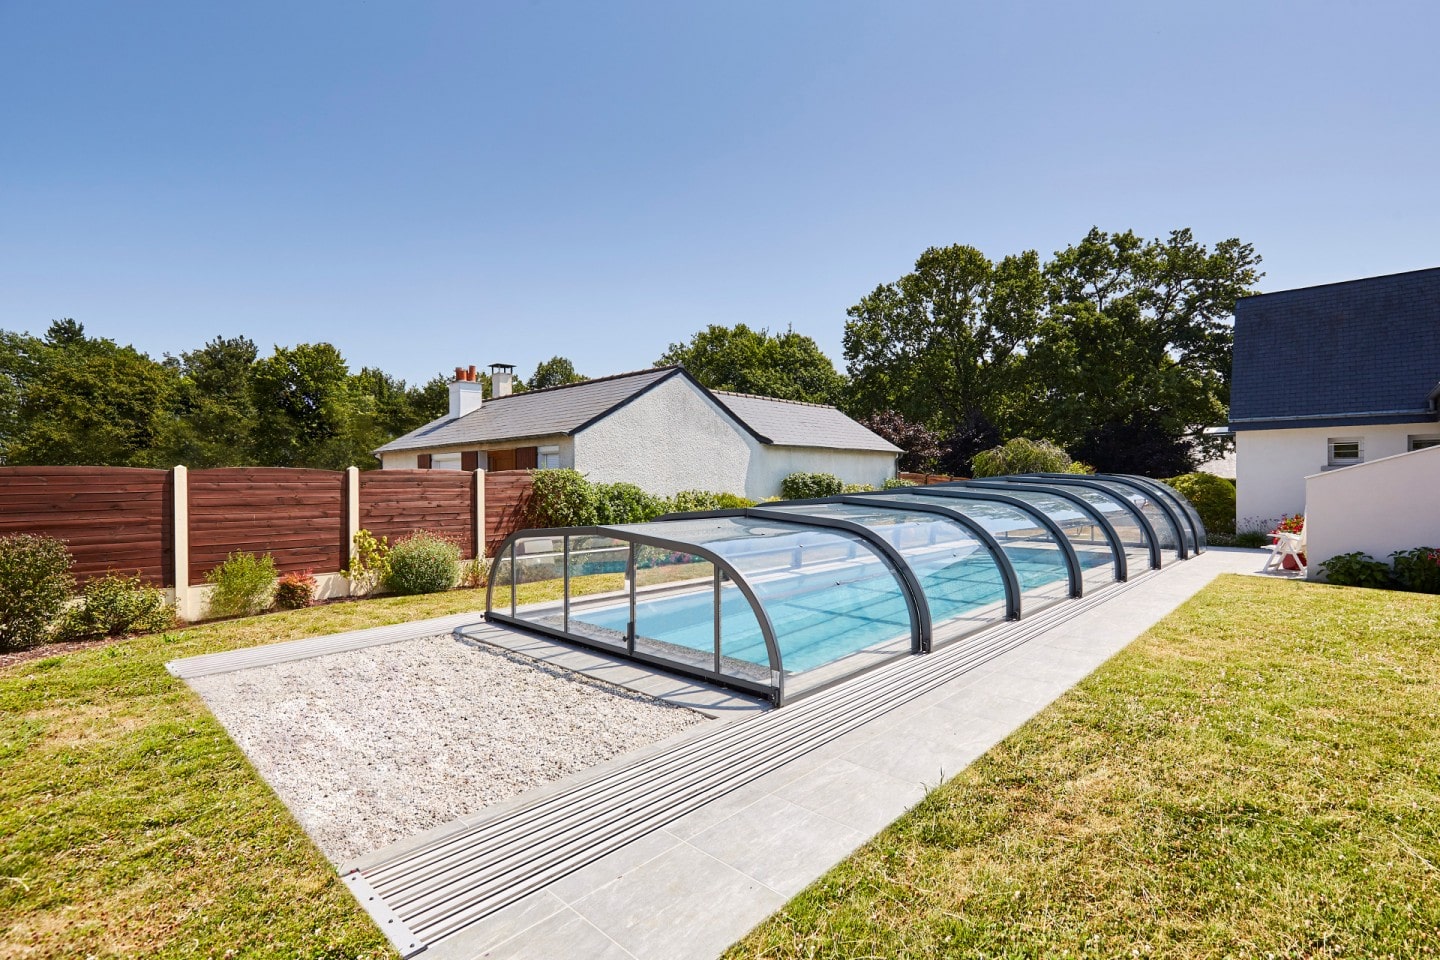 Les abris de piscine, sécurité, confort et économie d’énergie
